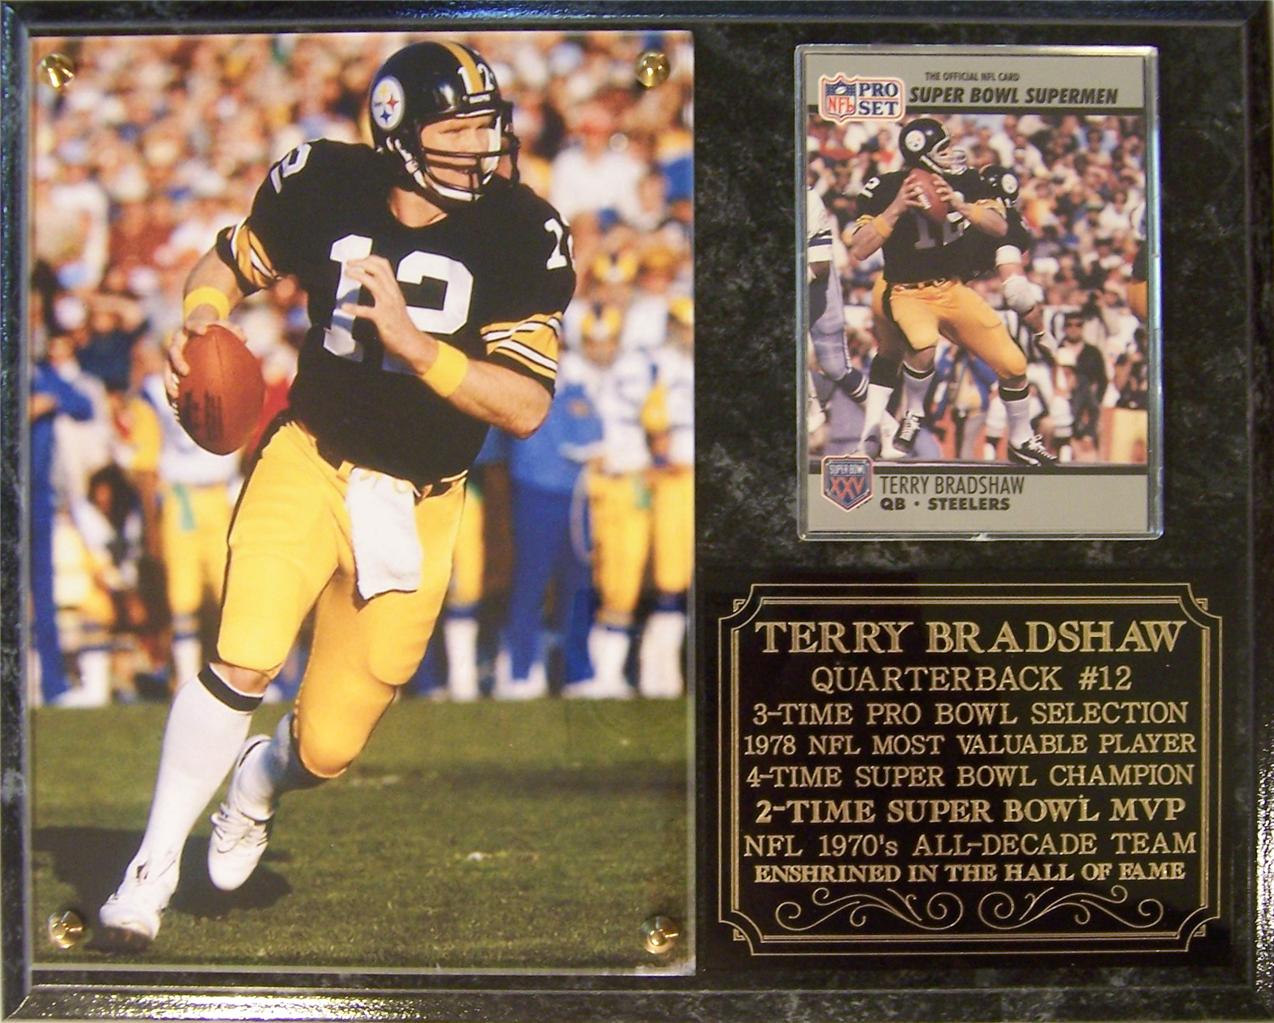 Terry Bradshaw - Sports Legend